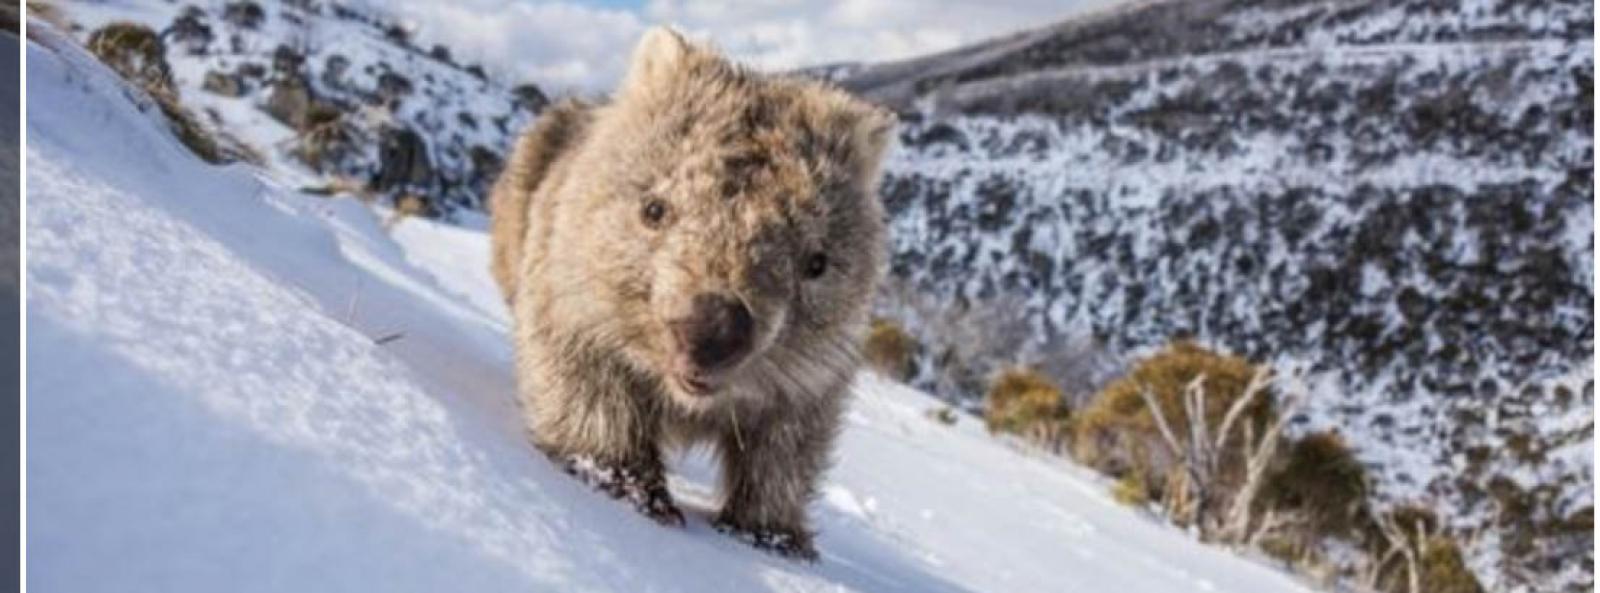 Wombat walks across the snow